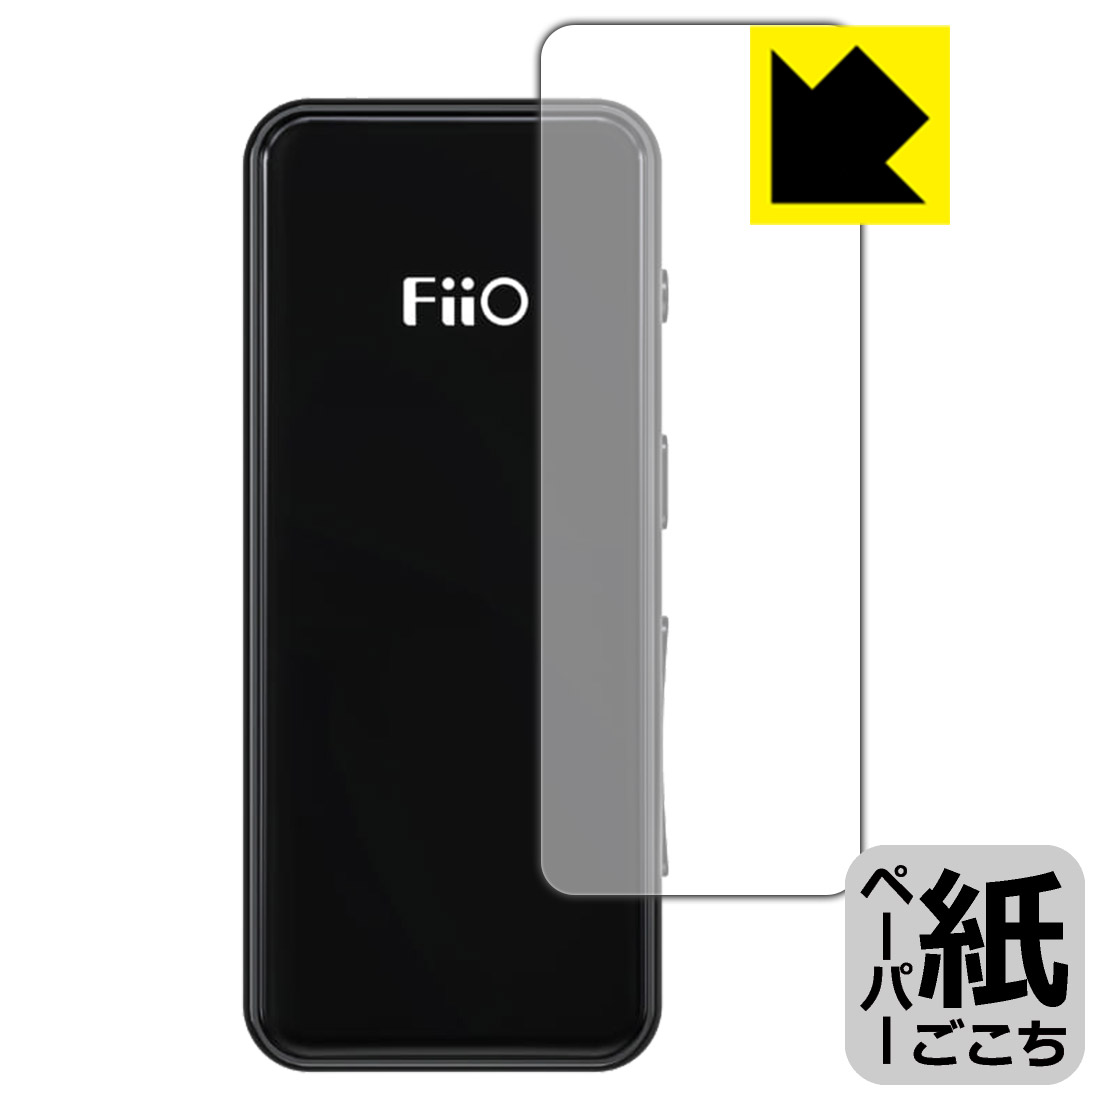 ●対応機種 : FiiO BTR3K●製品内容 : 前面用1枚●※この機器は周辺部が曲面となったラウンド仕様のため、保護フィルムを端まで貼ることができません。(この製品の横幅は約19mmです)　　※前面の端まで保護したい方は、「Flexible Shield」をご購入ください。●紙に書くような描き心地を実現する保護フィルムです。表面はアンチグレア(反射防止)タイプなので、光の反射や映り込みを抑えます。※本製品はフィルムの表面を特殊加工し、スタイラス等で筆記する際に抵抗を持たせるようにしております。そのため、タブレットのガラス面に直接描く場合に比べ、ペン先の摩耗が大きくなります。あらかじめご了承ください。●安心の国産素材を使用。日本国内の自社工場で製造し出荷しています。【ポスト投函送料無料】商品は【ポスト投函発送 (追跡可能メール便)】で発送します。お急ぎ、配達日時を指定されたい方は以下のクーポンを同時購入ください。【お急ぎ便クーポン】　プラス110円(税込)で速達扱いでの発送。お届けはポストへの投函となります。【配達日時指定クーポン】　プラス550円(税込)で配達日時を指定し、宅配便で発送させていただきます。【お急ぎ便クーポン】はこちらをクリック【配達日時指定クーポン】はこちらをクリック 　 板状タブレットの場合は紙を敷いて使用されていたイラストレーターさんや漫画家さんも多いようですが、液晶タブレットの場合は紙を敷くわけにもいかず、ペンの滑りなど気になる方もいらっしゃると思います。 このフィルムは表面の特殊加工により、紙に書いているような「カリカリというペンの感触」と描き心地を実現しました。 液晶タブレットのガラス面にペンで書く際の「つるつるした感触」を改善したい方におすすめのフィルムです。 ※本製品はフィルムの表面を特殊加工し、スタイラス等で筆記する際に抵抗を持たせるようにしております。そのため、タブレットのガラス面に直接描く場合に比べ、ペン先の摩耗が大きくなります。また、ペン先の素材や硬さなどで描く感覚が変わる場合があります。あらかじめご了承ください。 表面に微細な凹凸を作ることにより、外光を乱反射させギラツキを抑える「アンチグレア加工」がされております。 屋外での太陽光の映り込み、屋内でも蛍光灯などの映り込みが気になるシーンが多い方におすすめです。 接着面は気泡の入りにくい特殊な自己吸着タイプです。素材に柔軟性があり、貼り付け作業も簡単にできます。また、はがすときにガラス製フィルムのように割れてしまうことはありません。 貼り直しが何度でもできるので、正しい位置へ貼り付けられるまでやり直すことができます。 高品質の素材を使用。日本国内の弊社工場で加工している Made in Japan です。 使用上の注意 ●本製品は機器の画面をキズなどから保護するフィルムです。他の目的にはご使用にならないでください。 ●本製品は液晶保護および機器本体を完全に保護することを保証するものではありません。機器の破損、損傷、故障、その他損害につきましては一切の責任を負いかねます。 ●製品の性質上、画面操作の反応が変化したり、表示等が変化して見える場合がございます。 ●貼り付け作業時の失敗(位置ズレ、汚れ、ゆがみ、折れ、気泡など)および取り外し作業時の破損、損傷などについては、一切の責任を負いかねます。 ●水に濡れた状態でのご使用は吸着力の低下などにより、保護フィルムがはがれてしまう場合がございます。防水対応の機器でご使用の場合はご注意ください。 ●アルコール類やその他薬剤を本製品に付着させないでください。表面のコーティングや吸着面が変質するおそれがあります。 ●品質向上のため、仕様などを予告なく変更する場合がございますので、予めご了承ください。